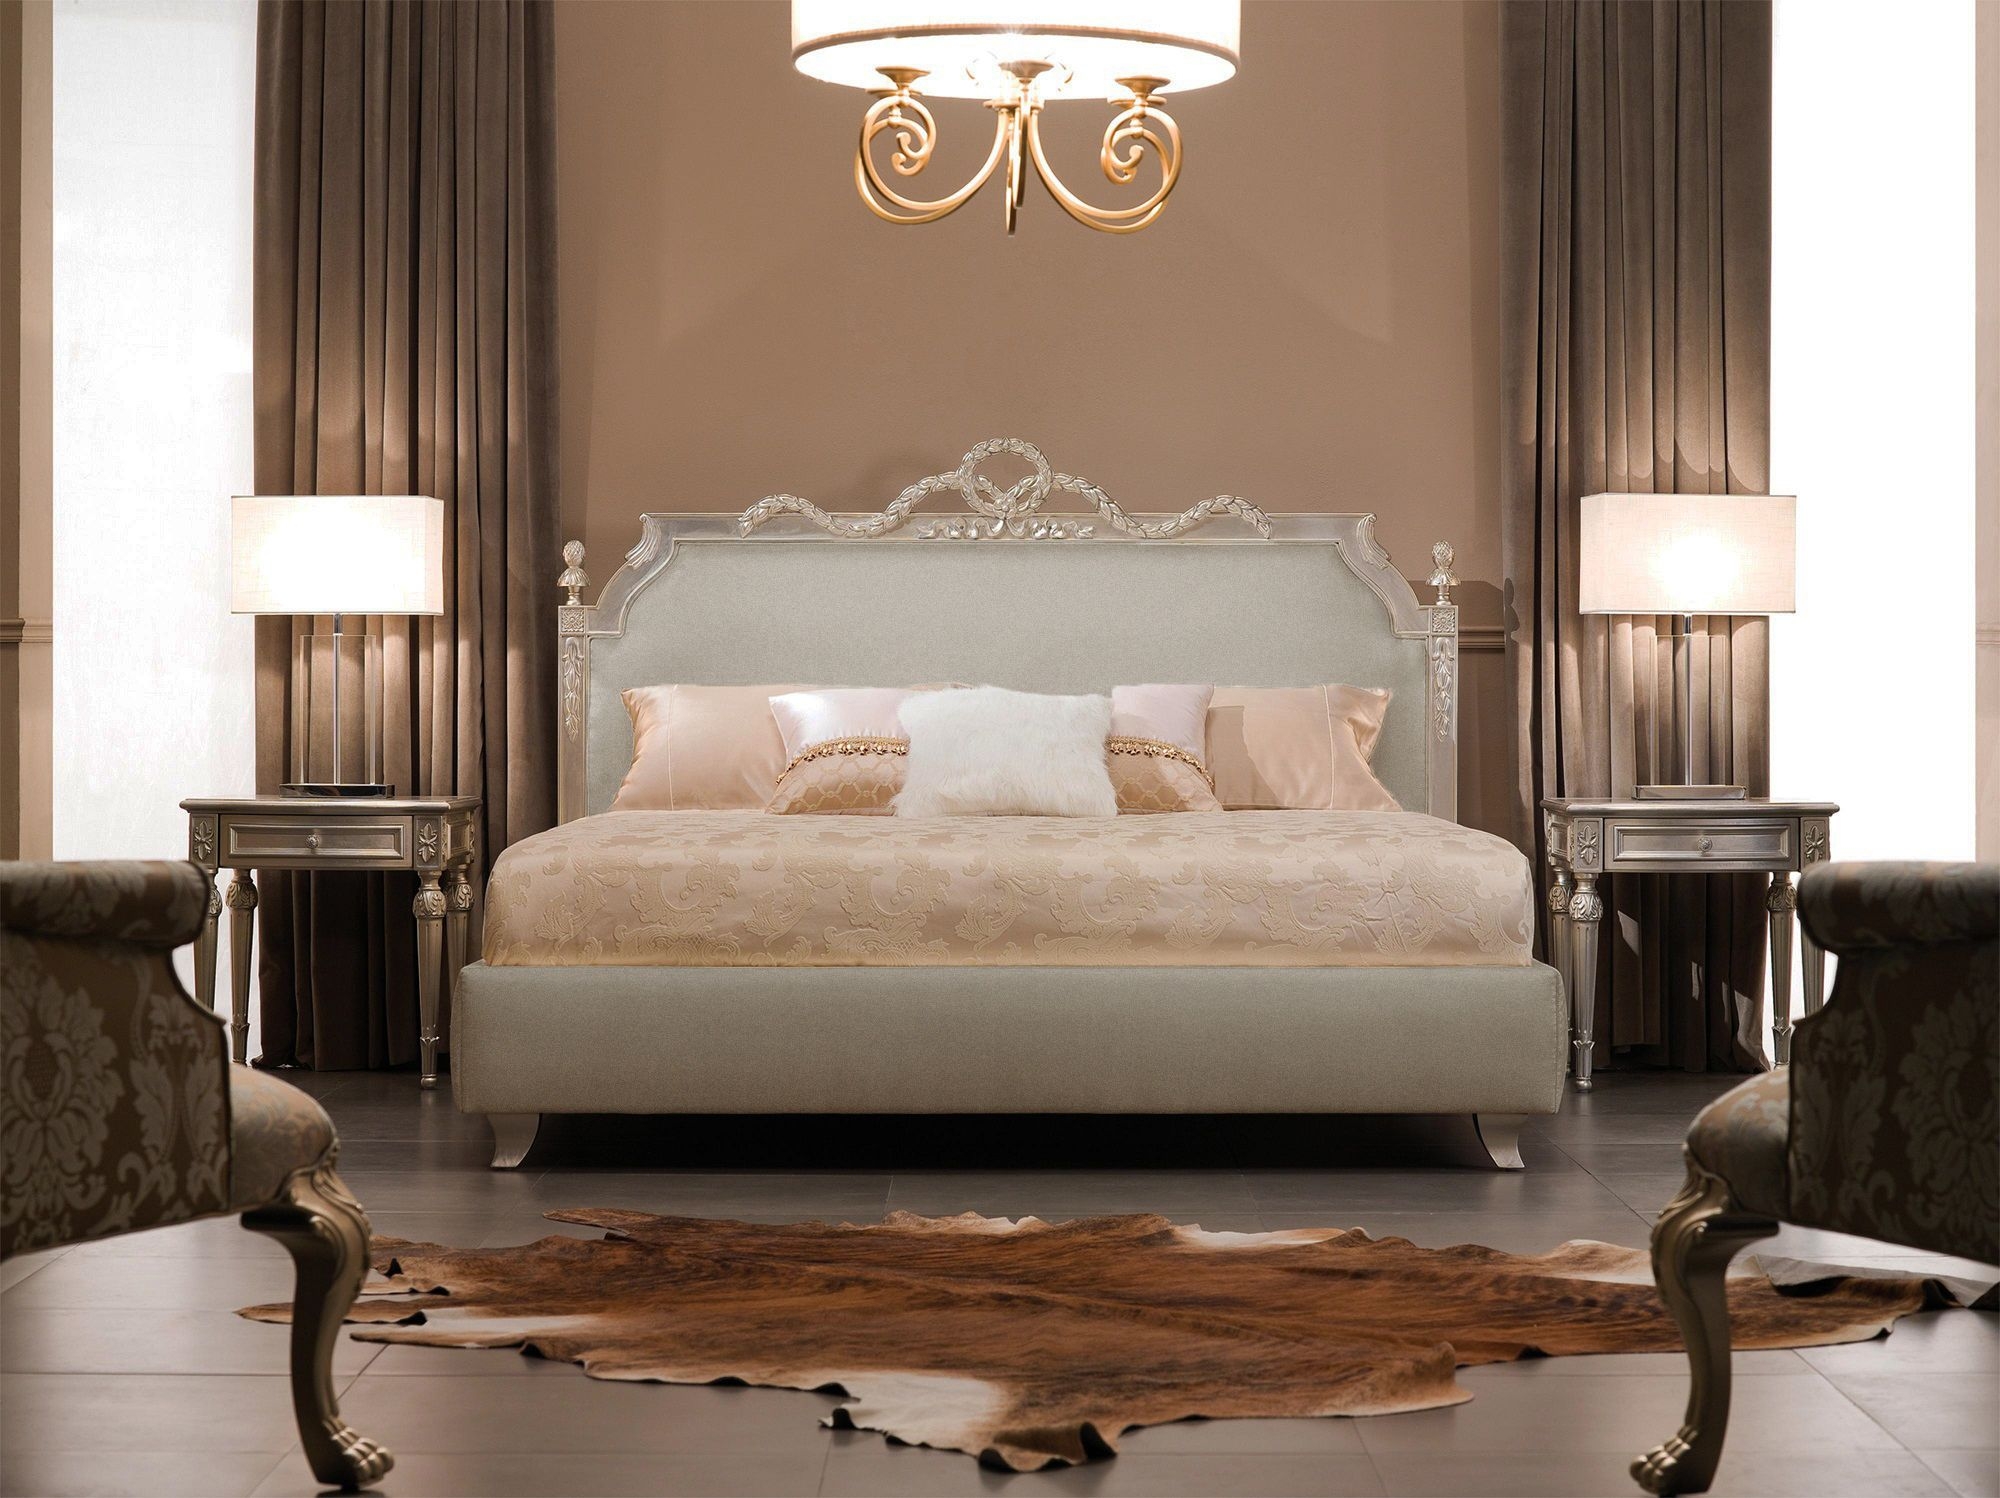 Luxury bedroom furniture designer bed featuring baroque bedroom set